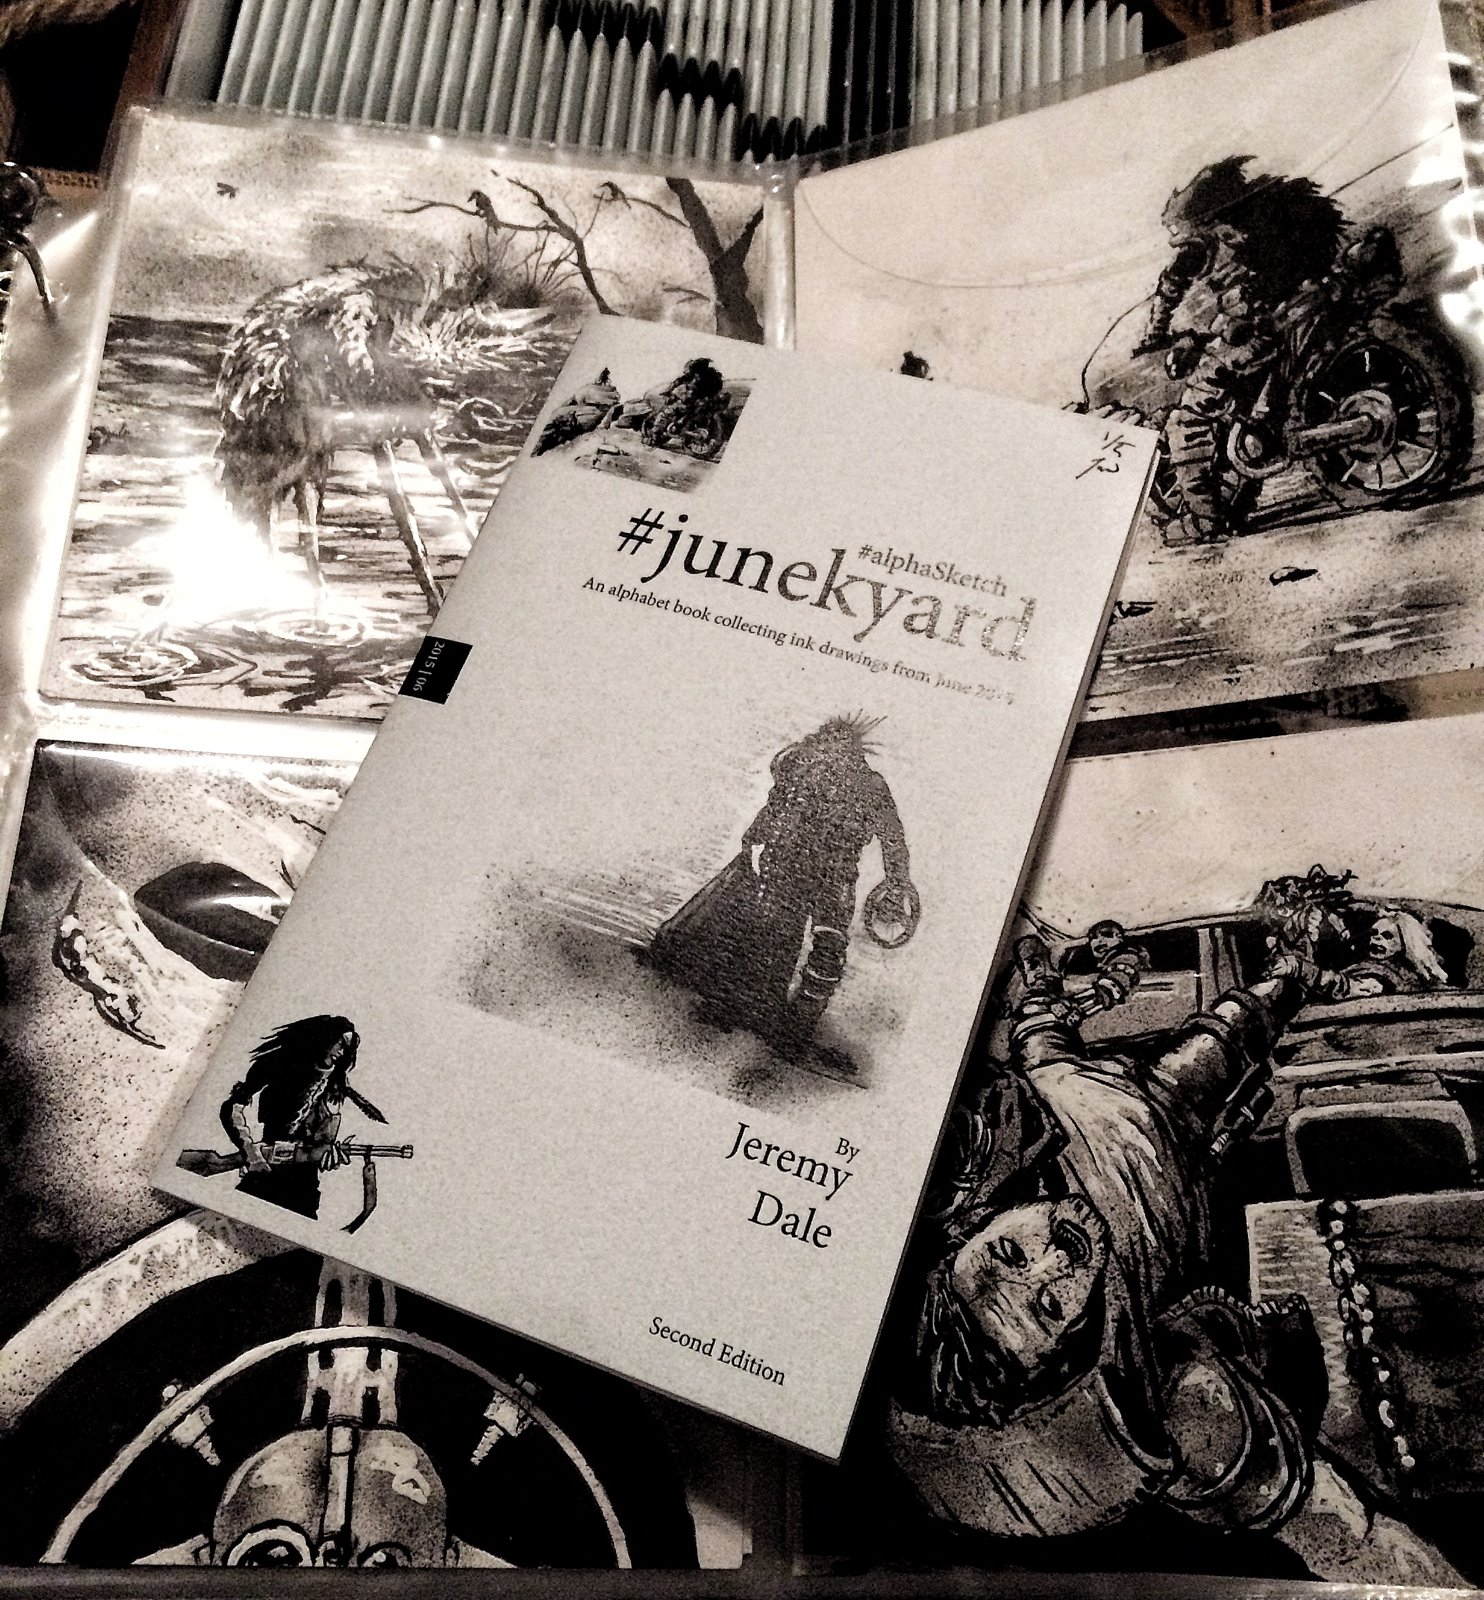 Junekyard #alphaSketch Books/Originals